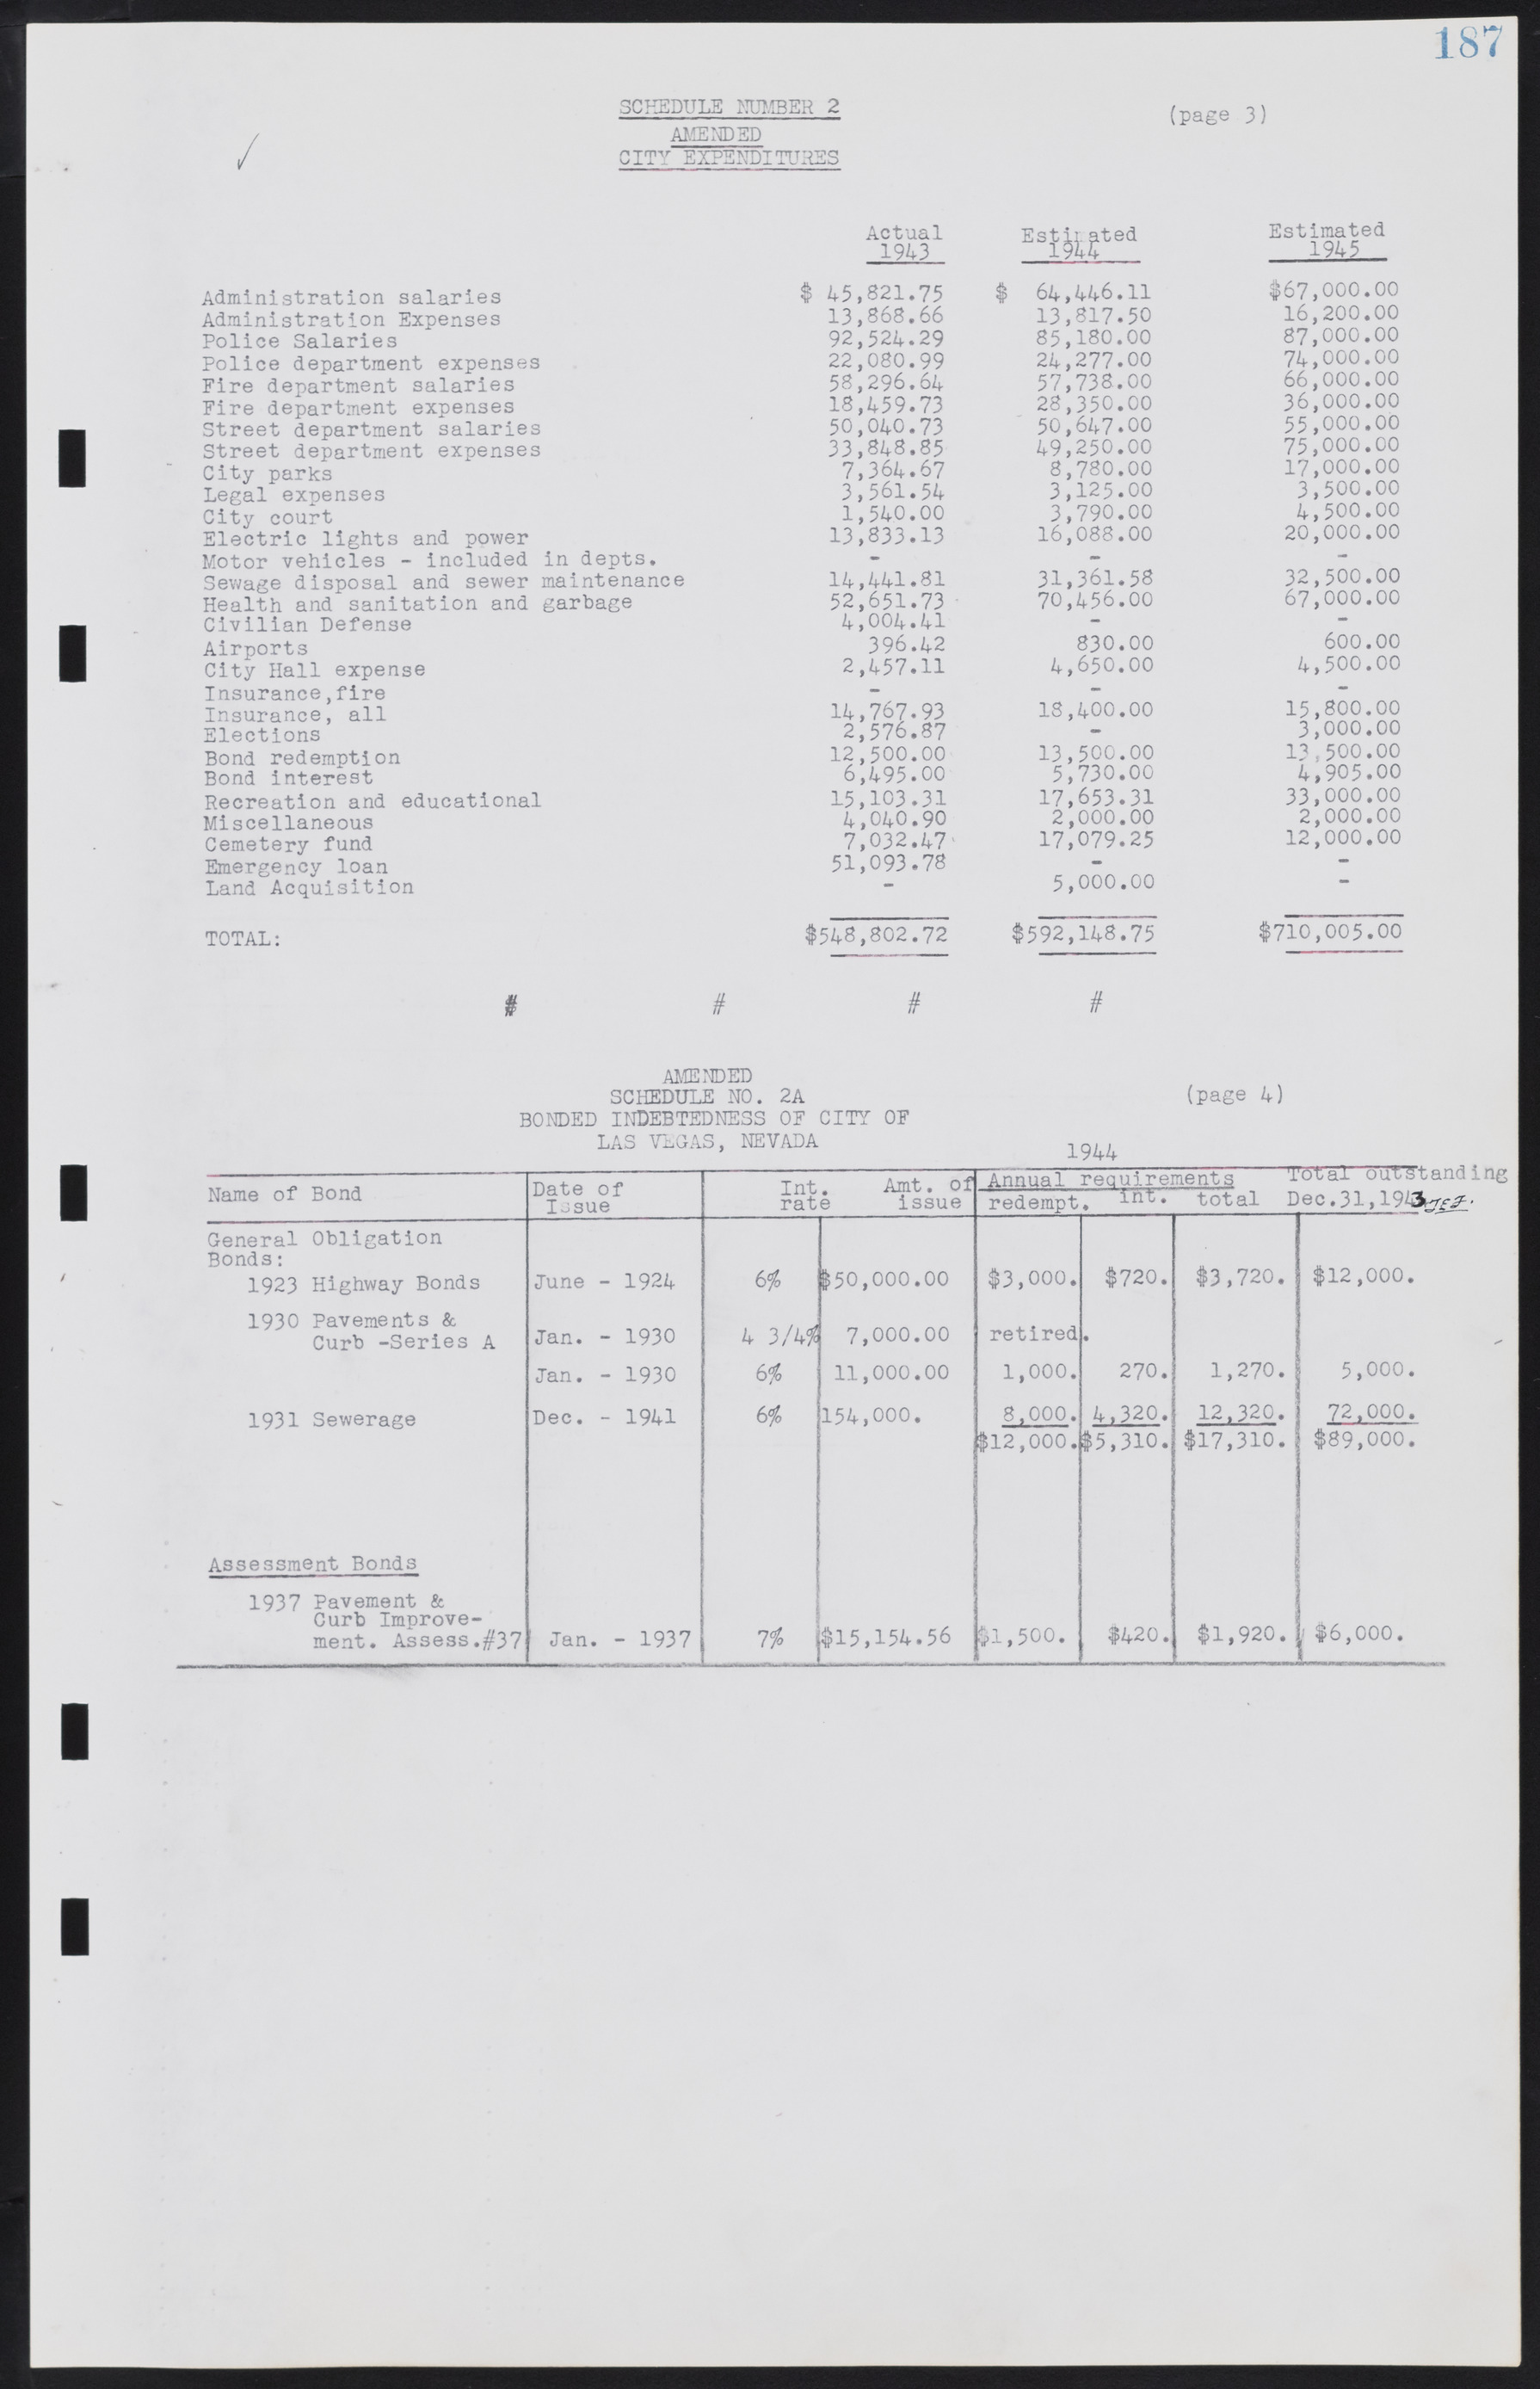 Las Vegas City Commission Minutes, August 11, 1942 to December 30, 1946, lvc000005-206